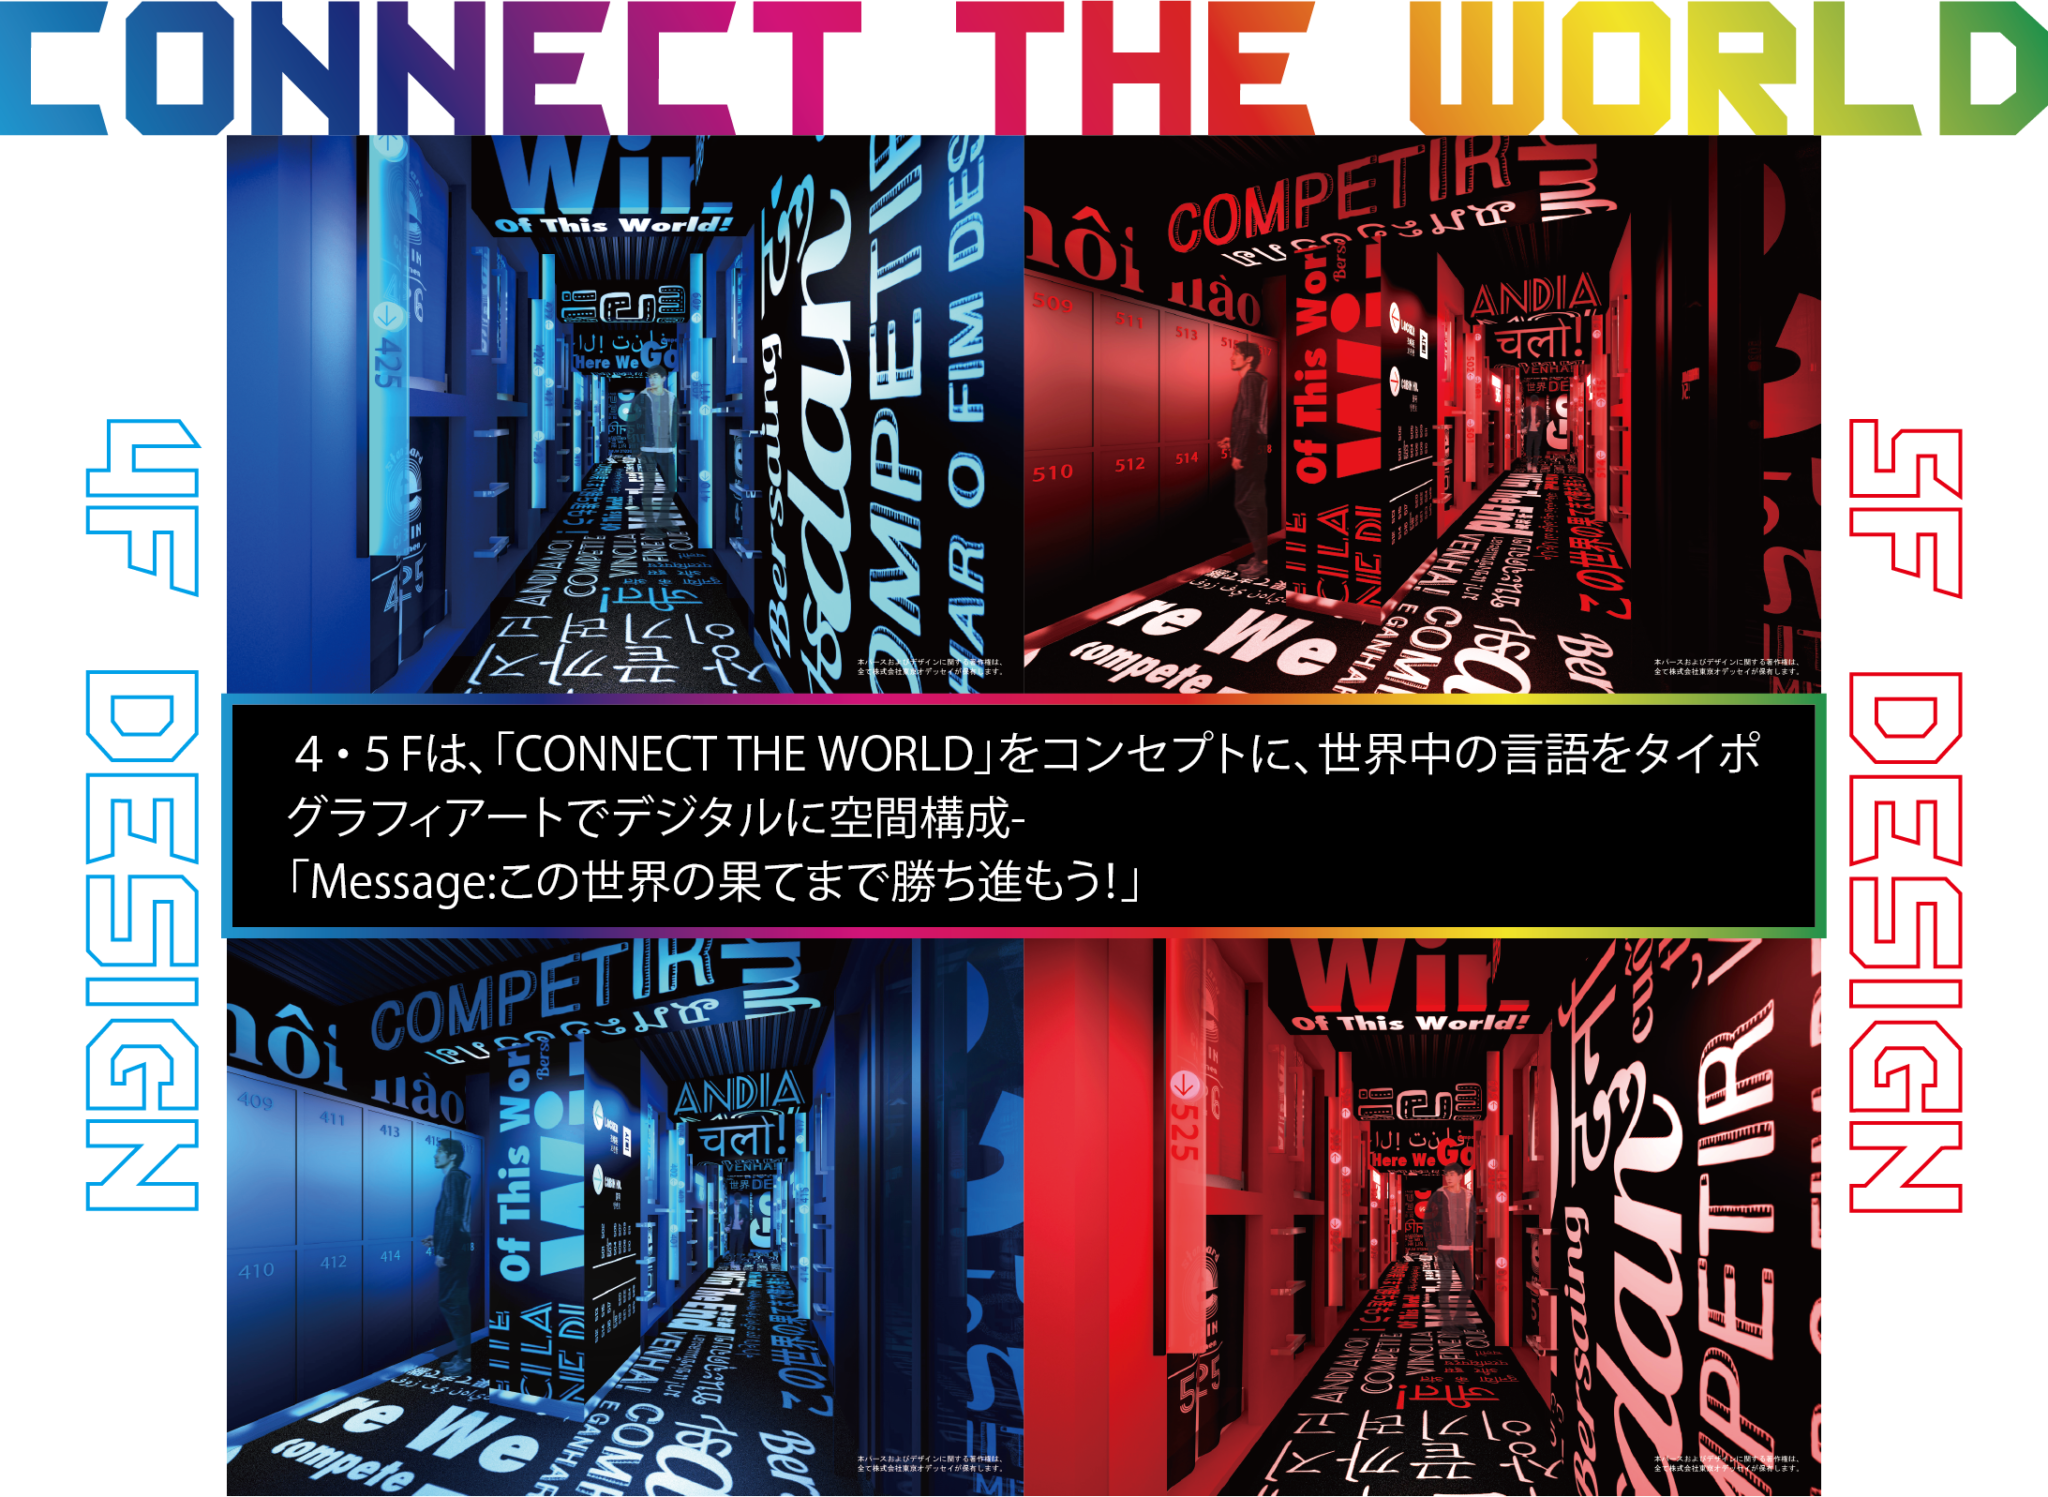 ４・５Fは、「CONNECT THE WORLD」をコンセプトに、世界中の言語をタイポ グラフィアートでデジタルに空間構成- 「Message:この世界の果てまで勝ち進もう！」